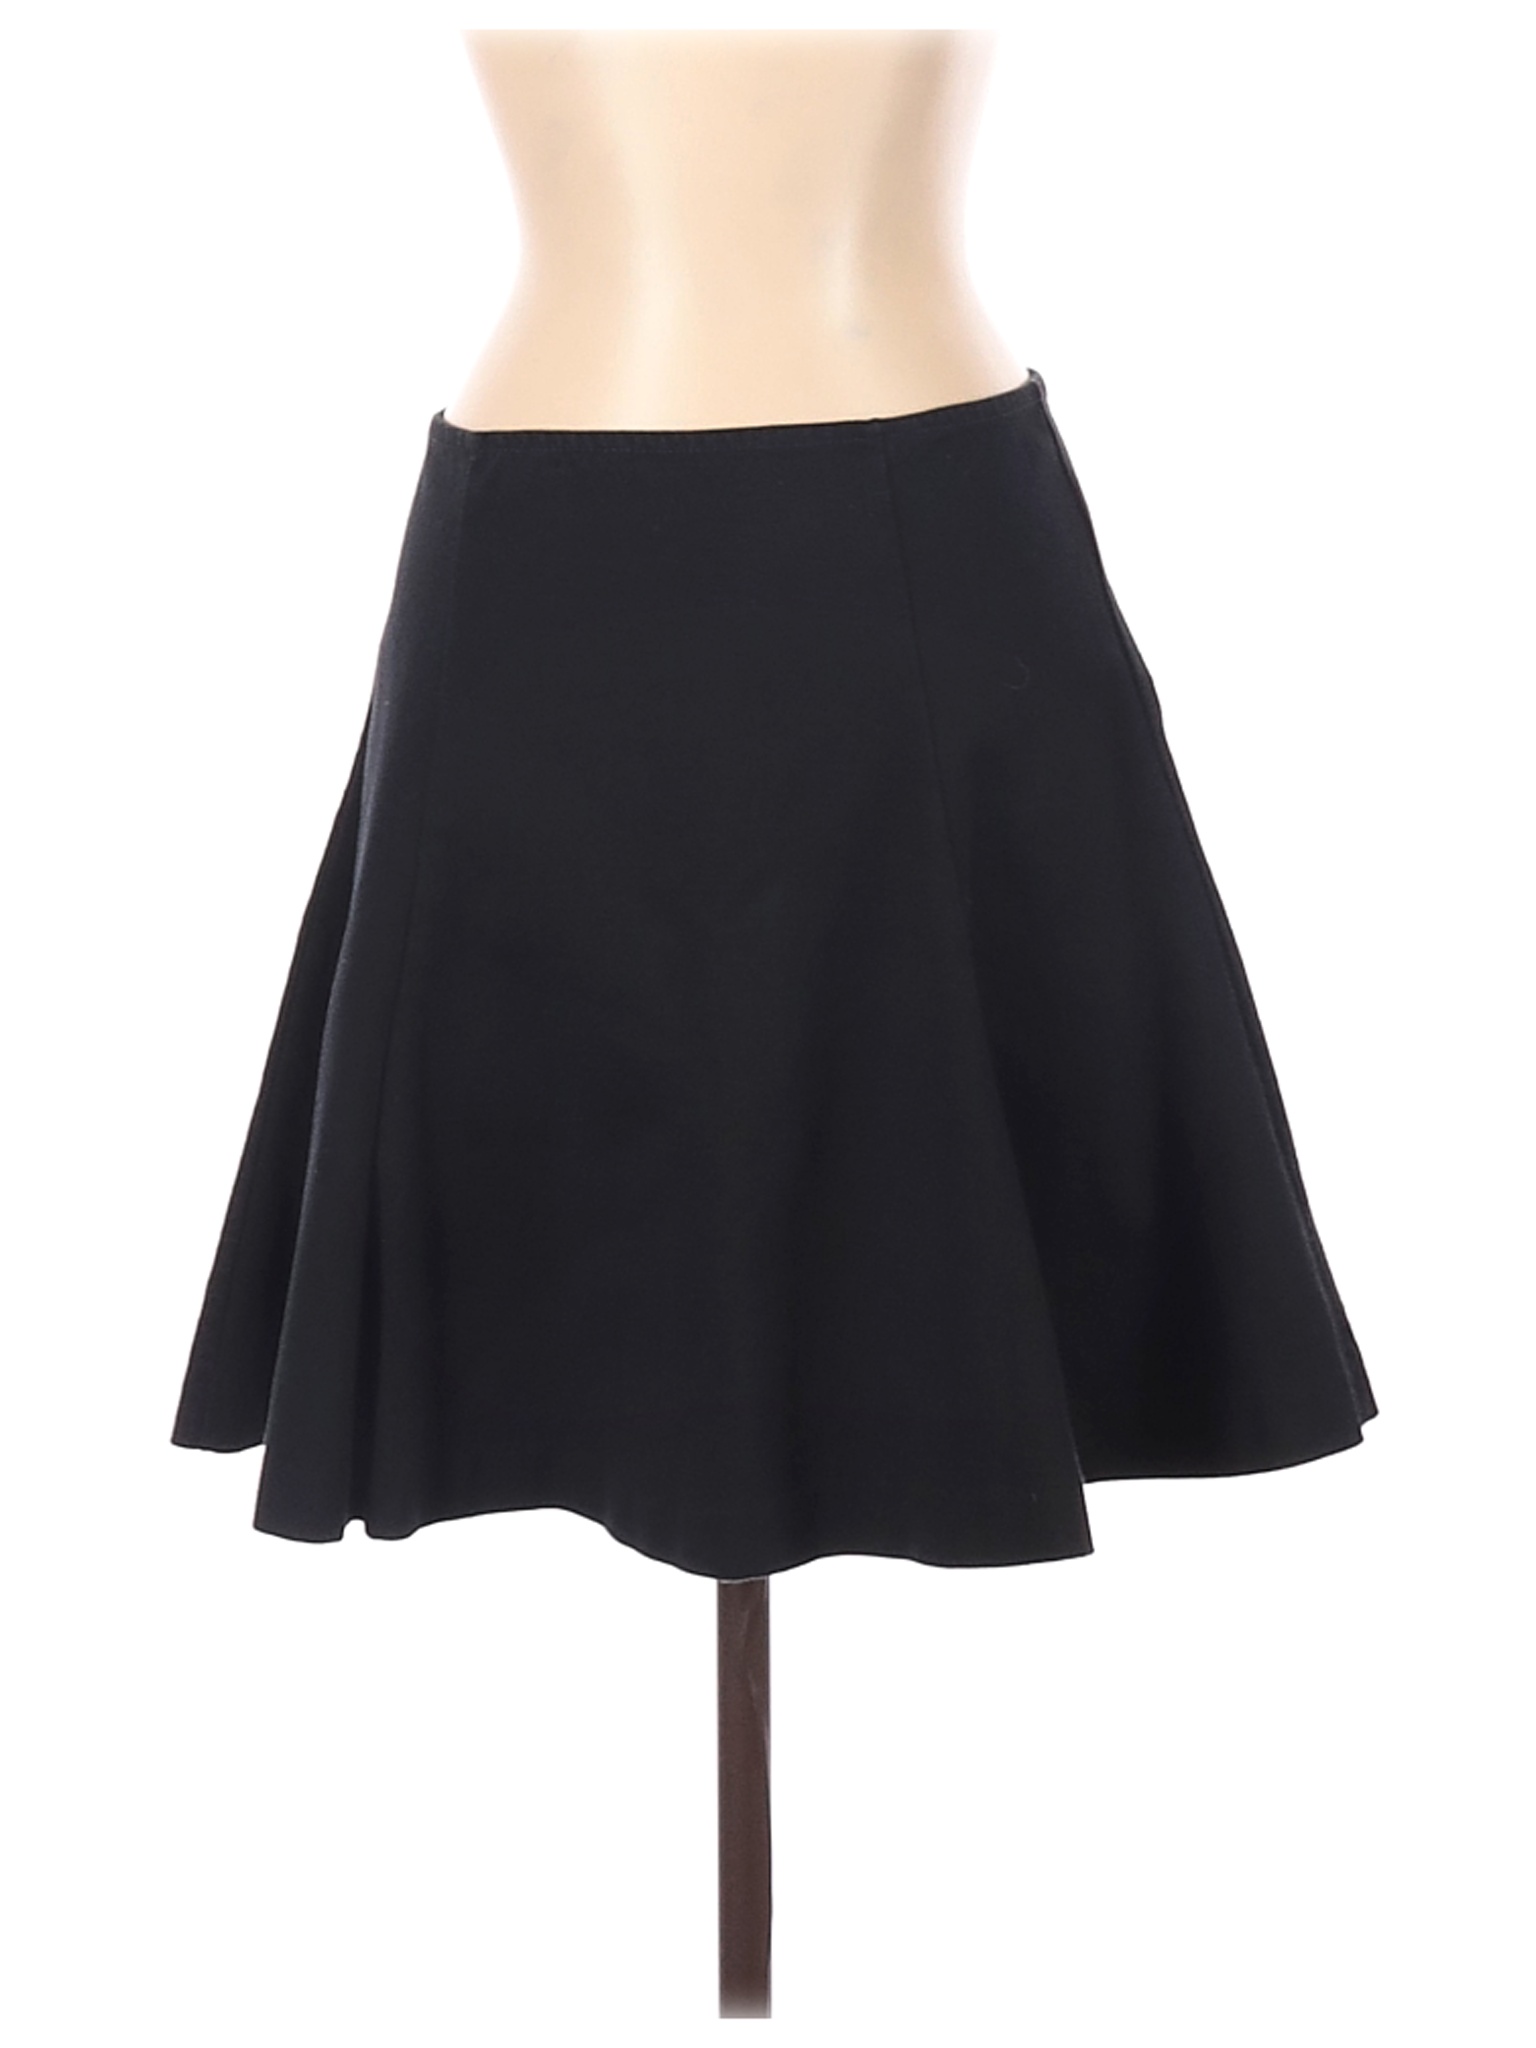 Gap Women Black Casual Skirt S | eBay